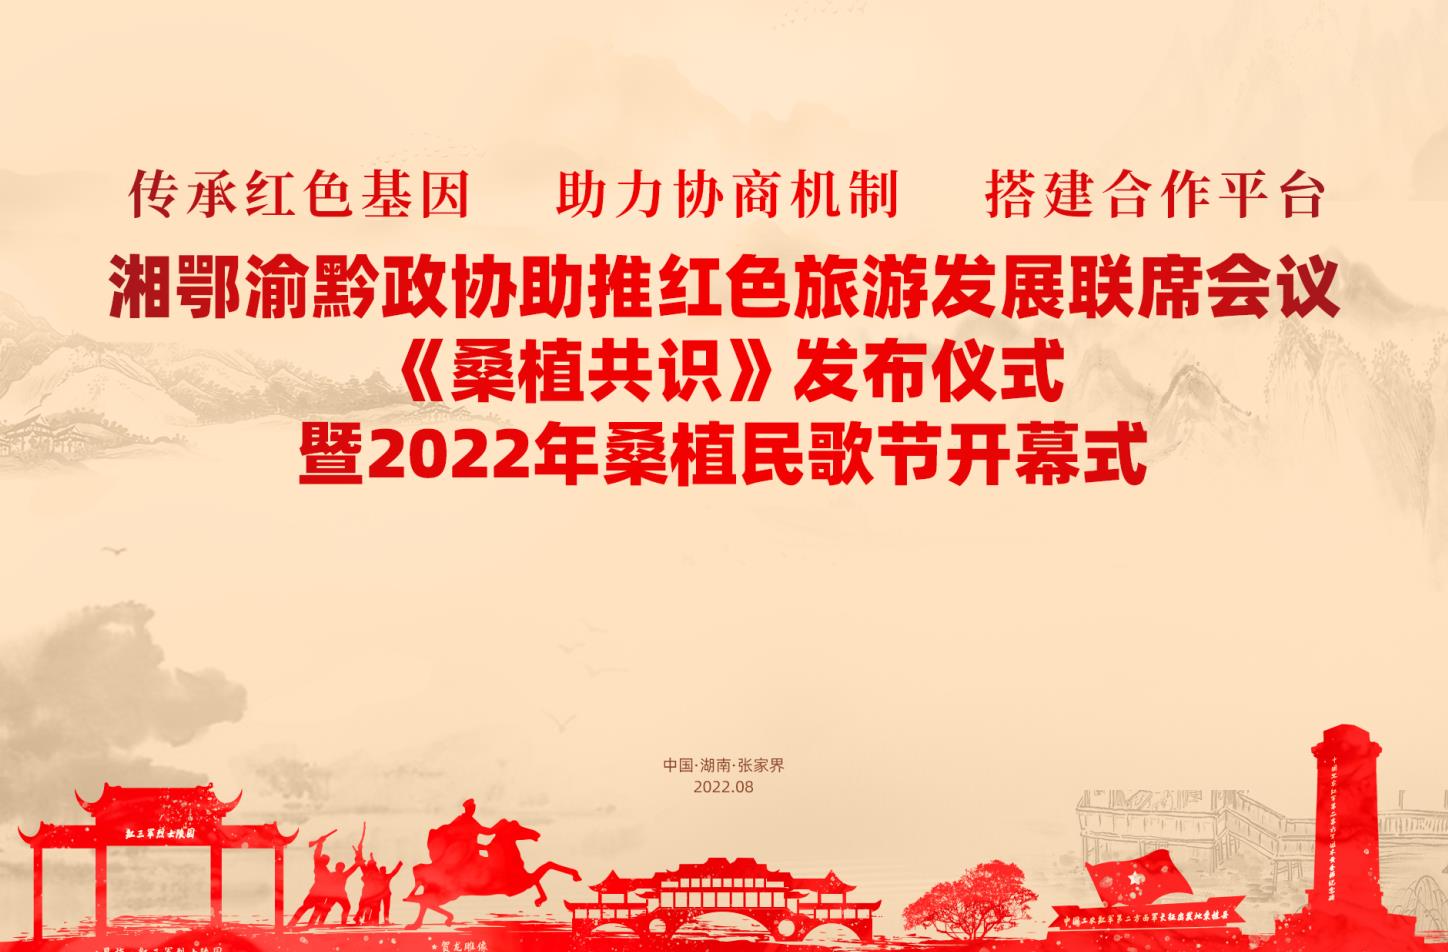 湘鄂渝黔政协助推红色旅游发展联席会议